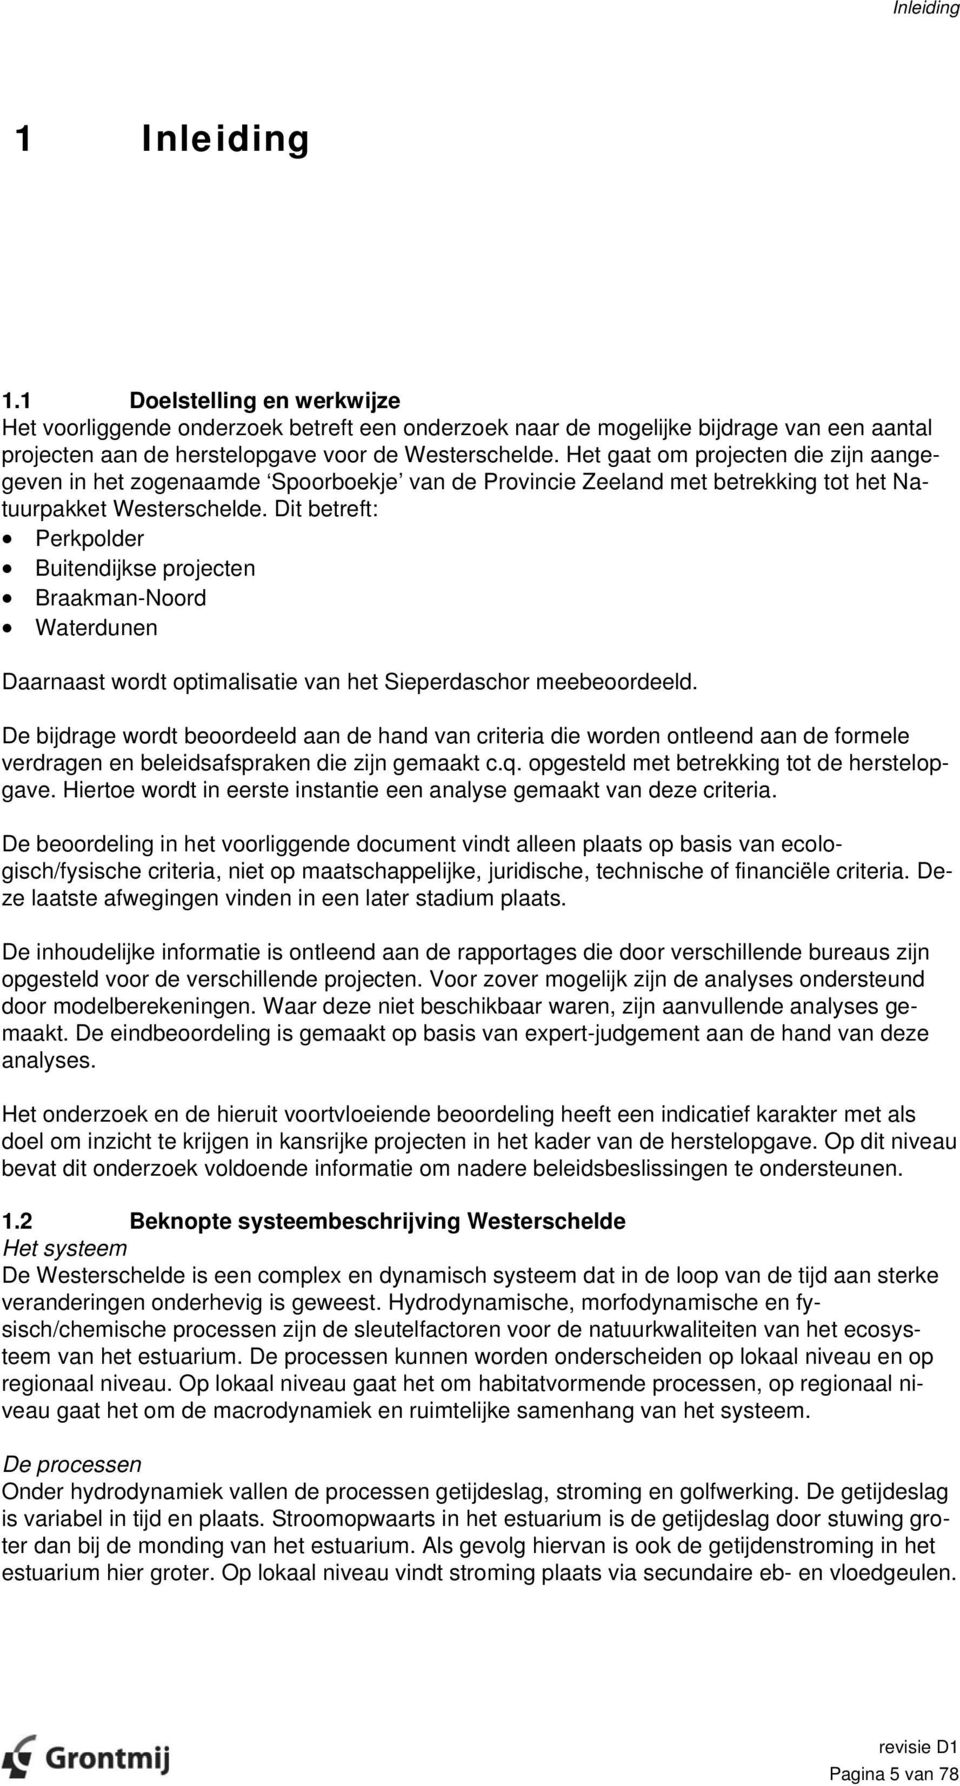 Dit betreft: Perkpolder Buitendijkse projecten Braakman-Noord Waterdunen Daarnaast wordt optimalisatie van het Sieperdaschor meebeoordeeld.